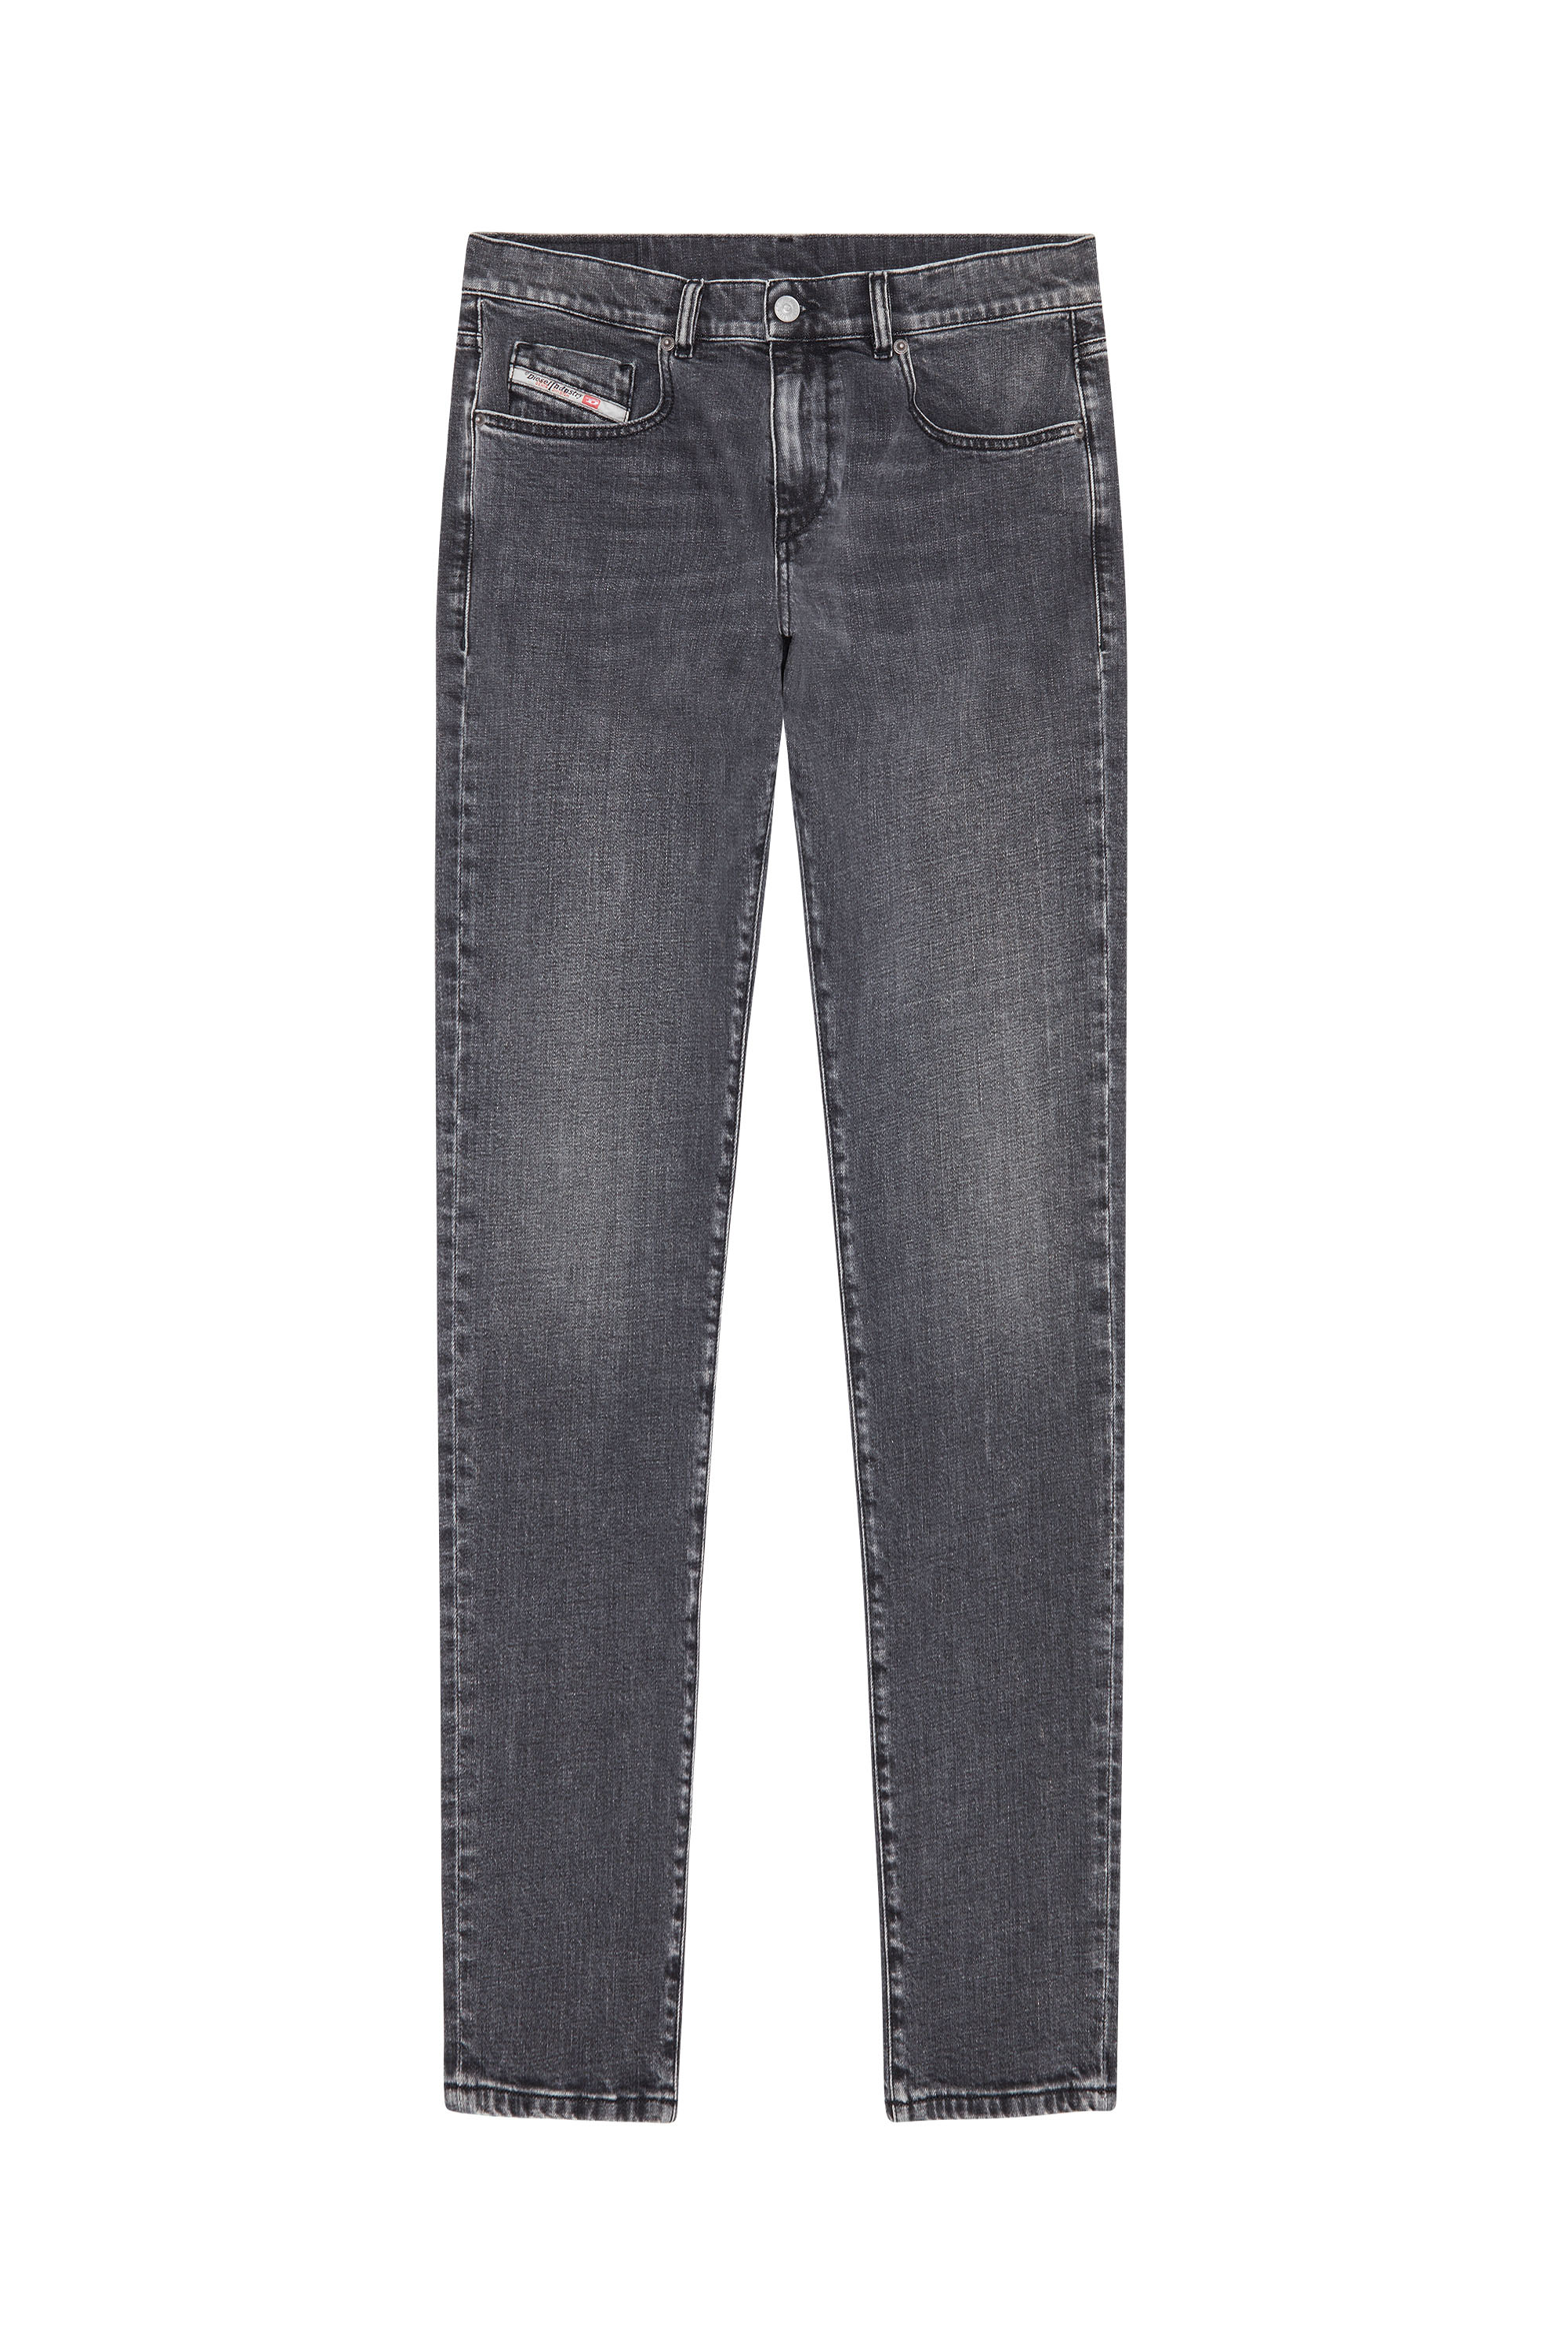 Slim Jeans 2019 D-Strukt 09C47, Black/Dark grey - Jeans